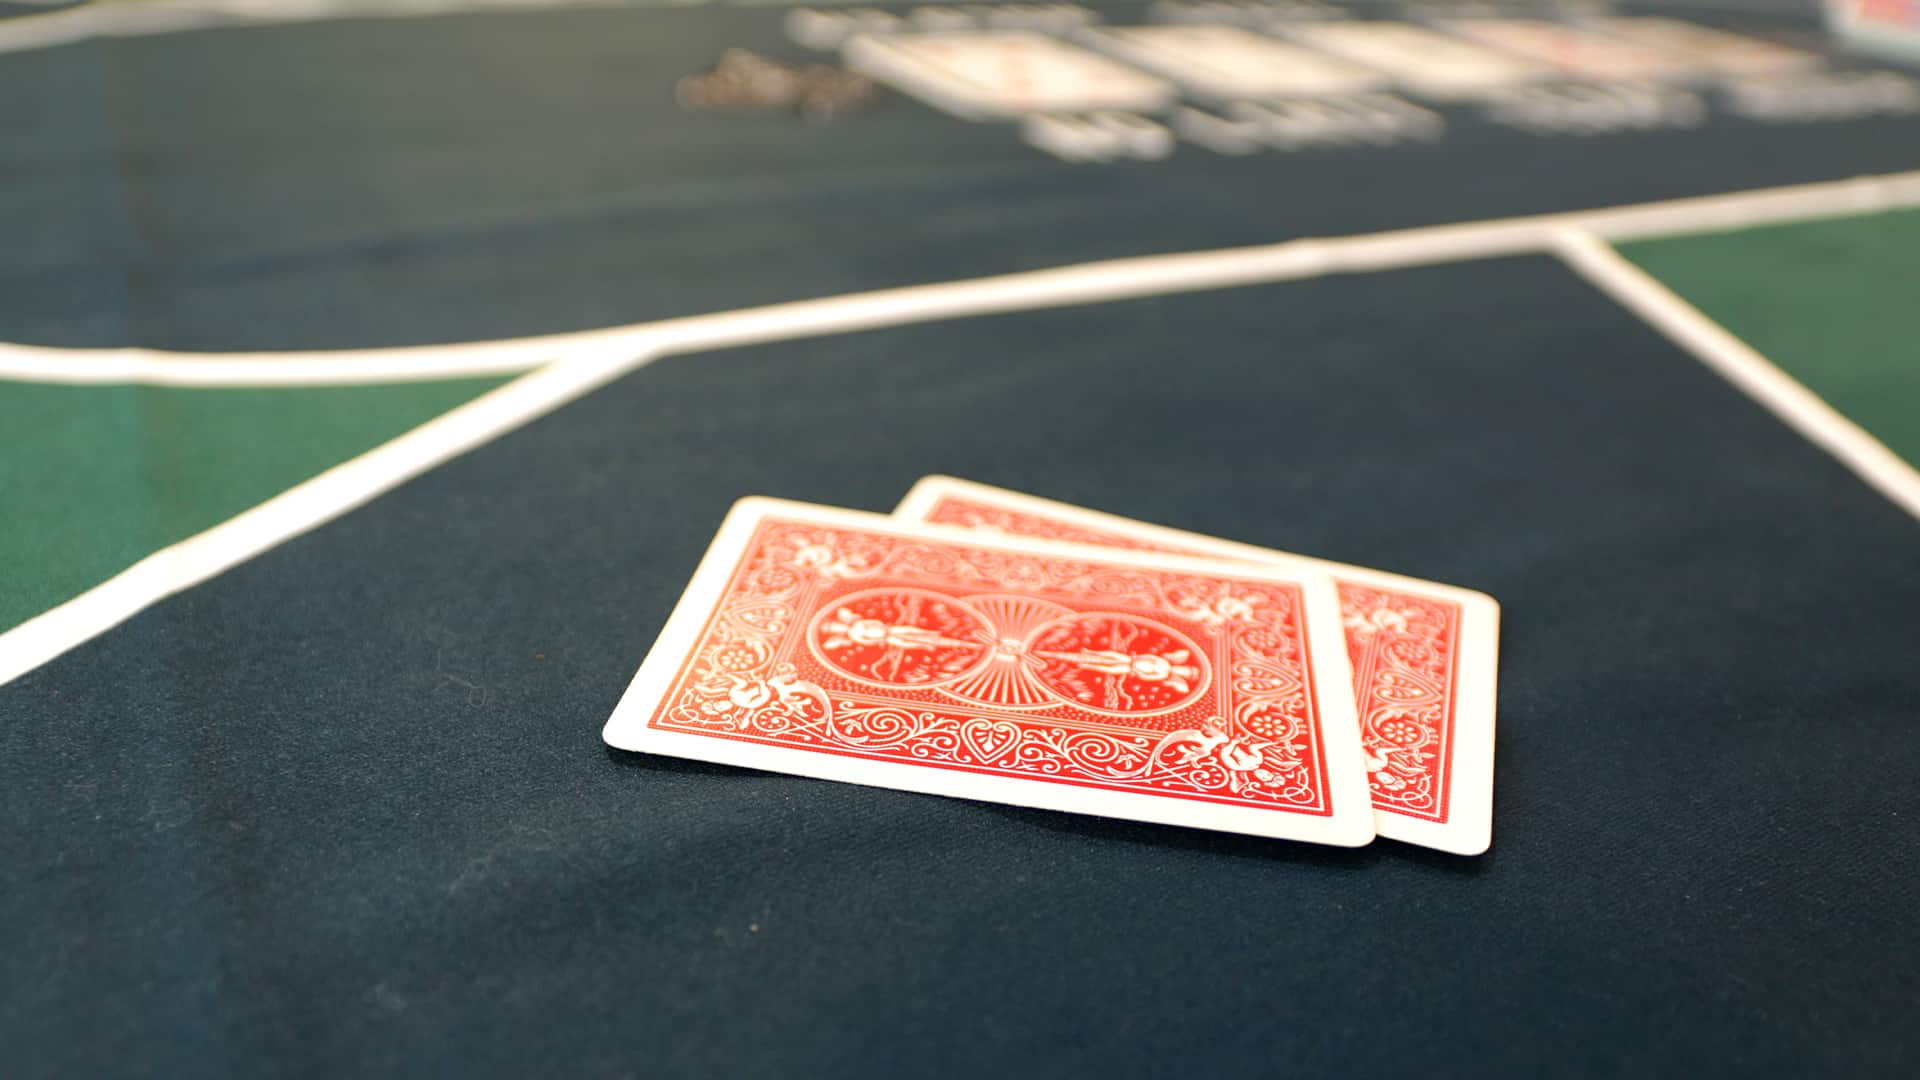 Сукно для покера премиум качества 175 х 90 см непромокаемое с разметкой на 10 игроков 10404